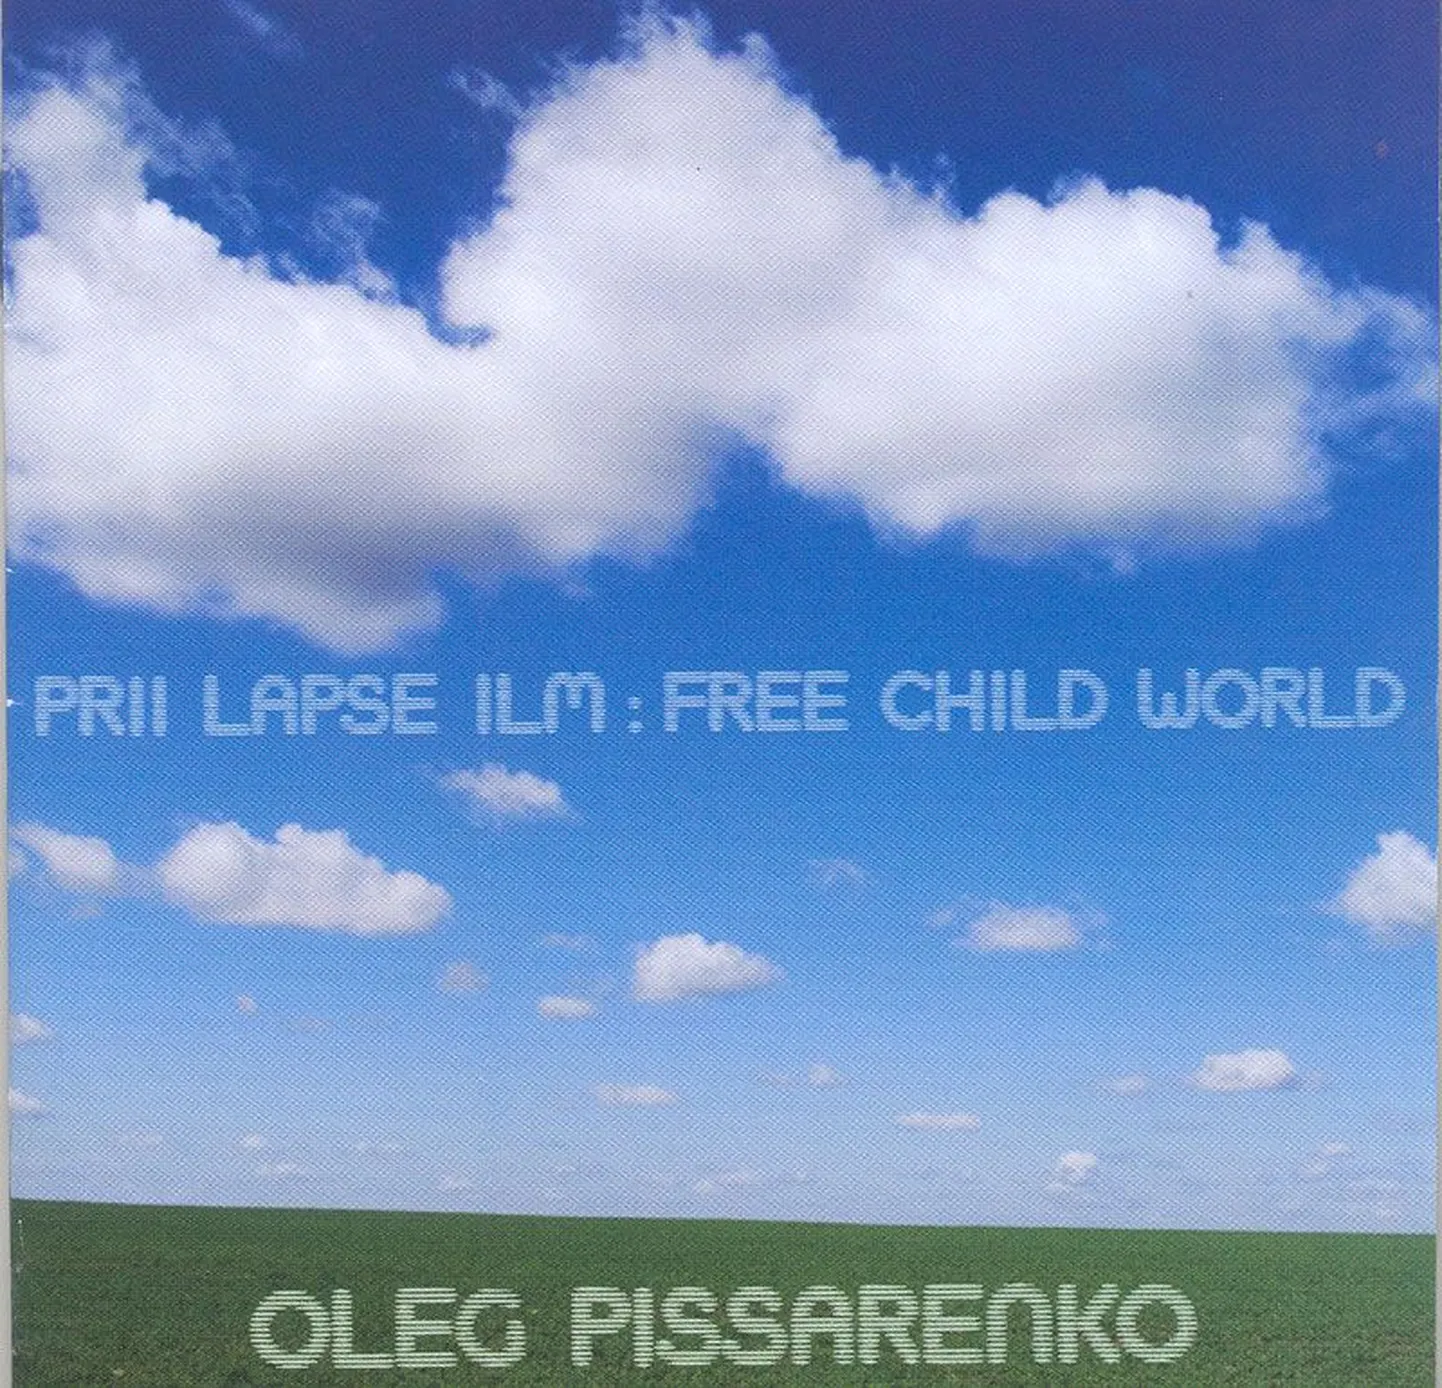 Oleg Pissarenko 
Prii lapse ilm 
(Oleg Pissarenko)